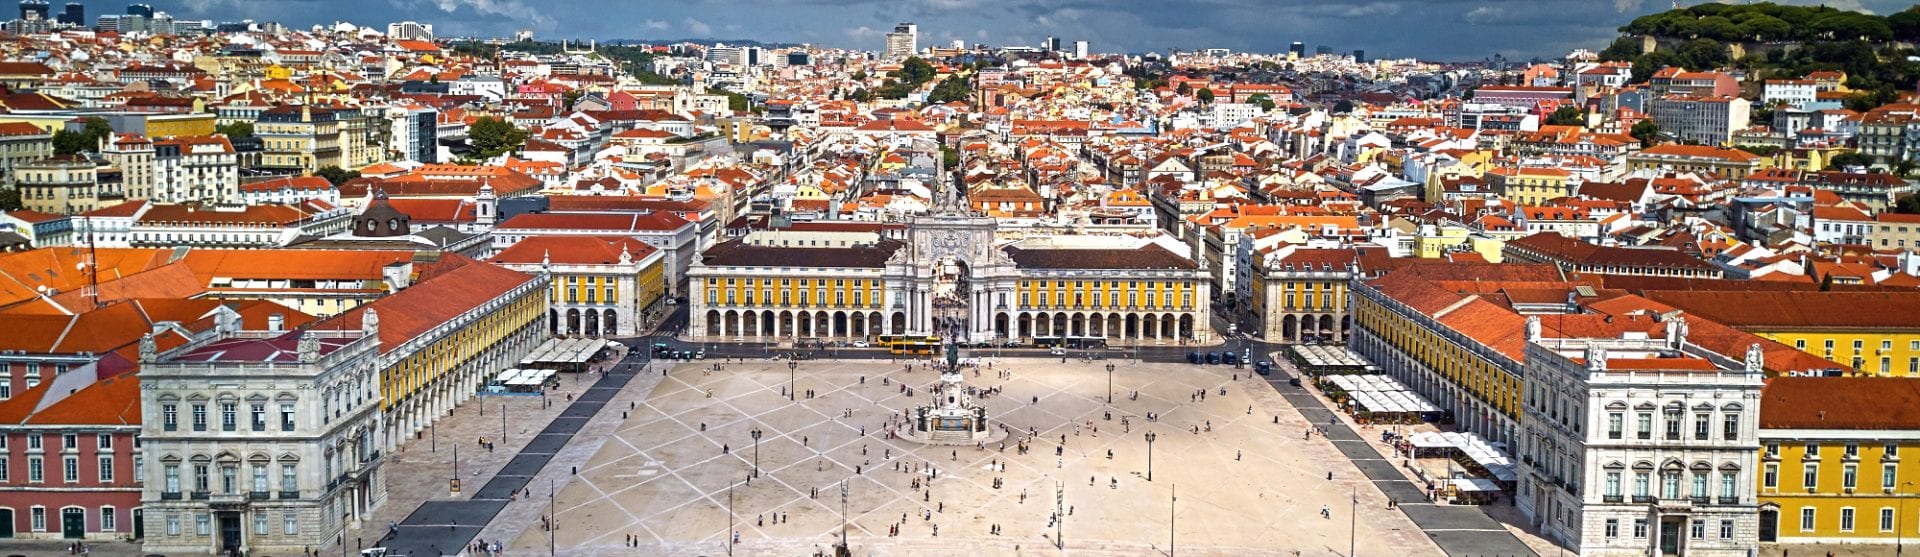 Lisboa a cidade europeia com maior reserva turística